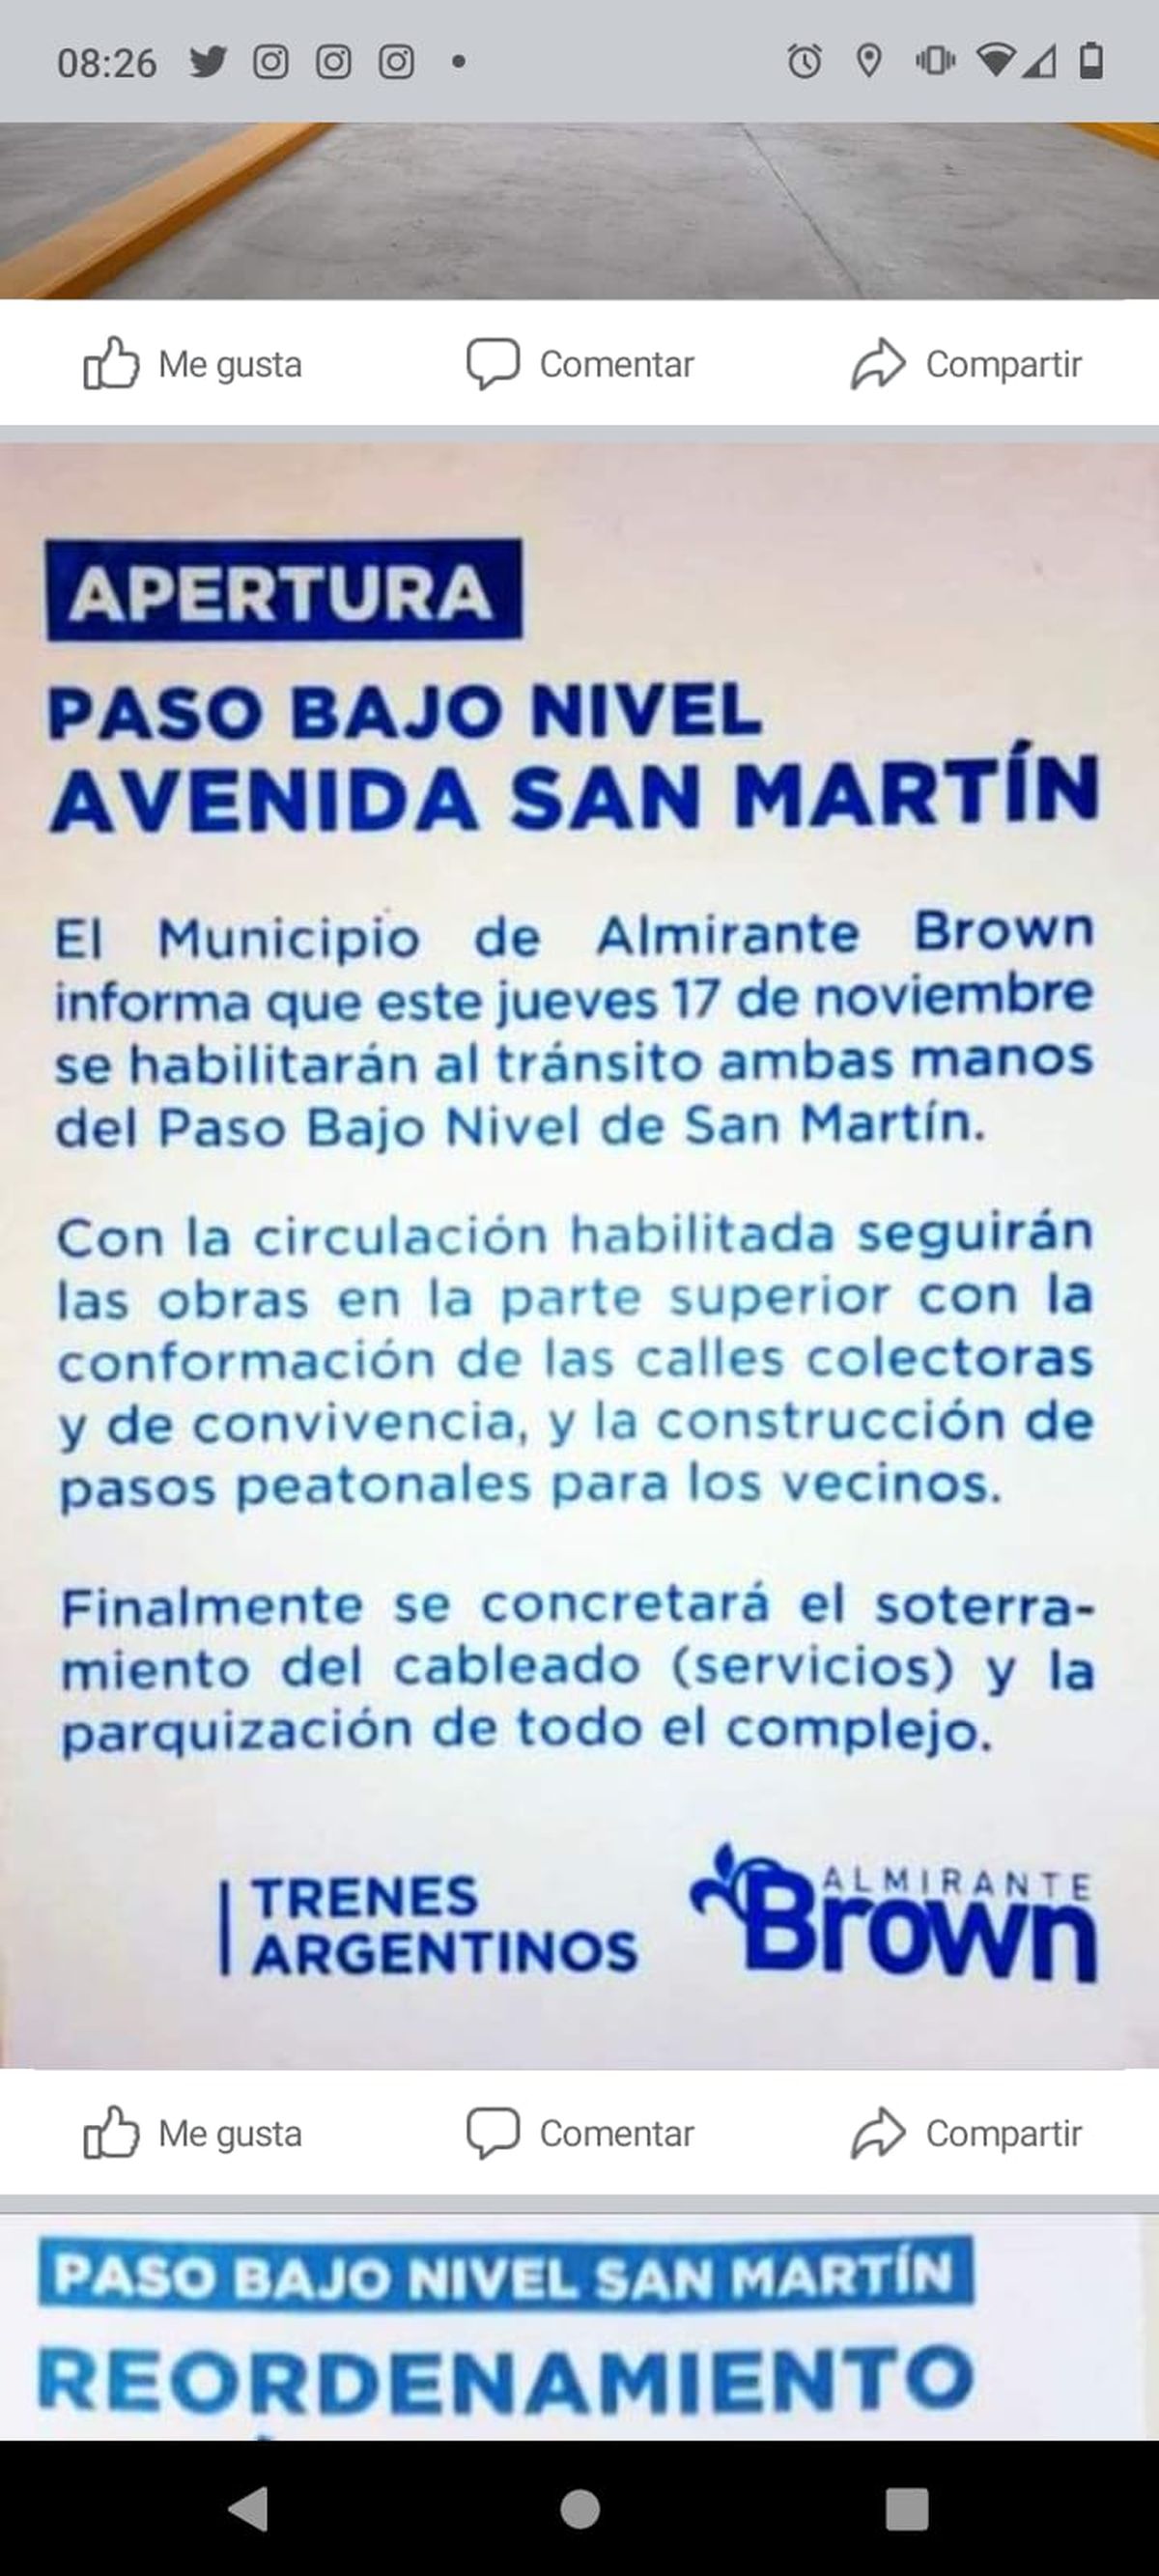 Habilitan el paso bajo nivel de San Martín en Almirante Brown: cómo queda el tránsito